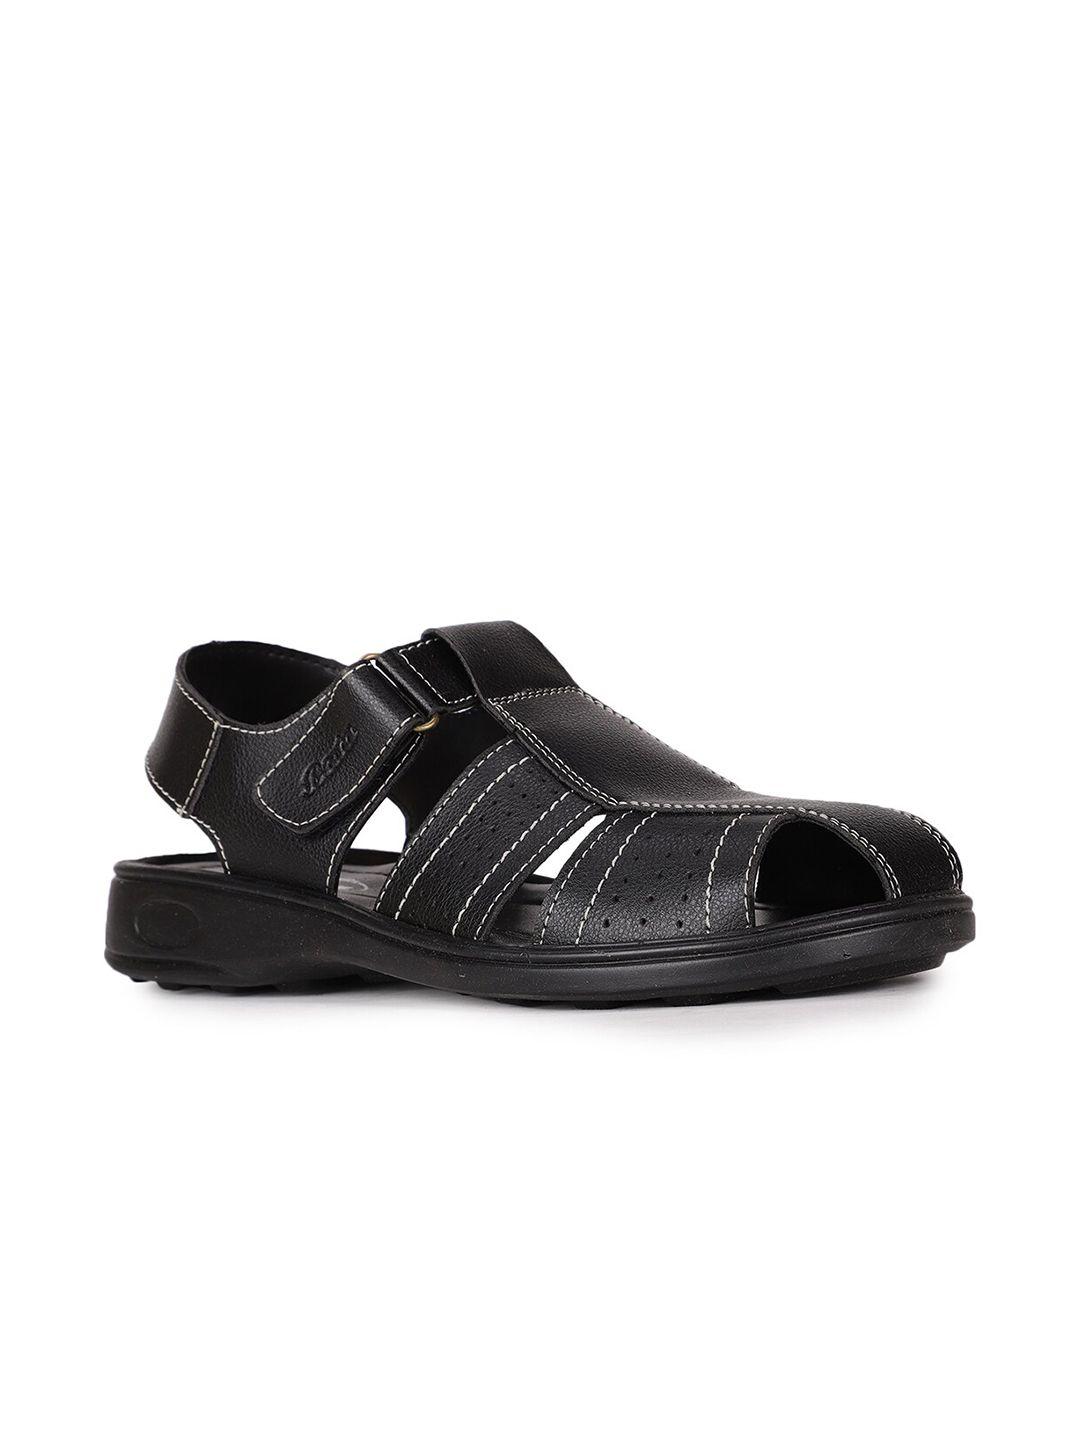 bata-men-black-fisherman-sandals